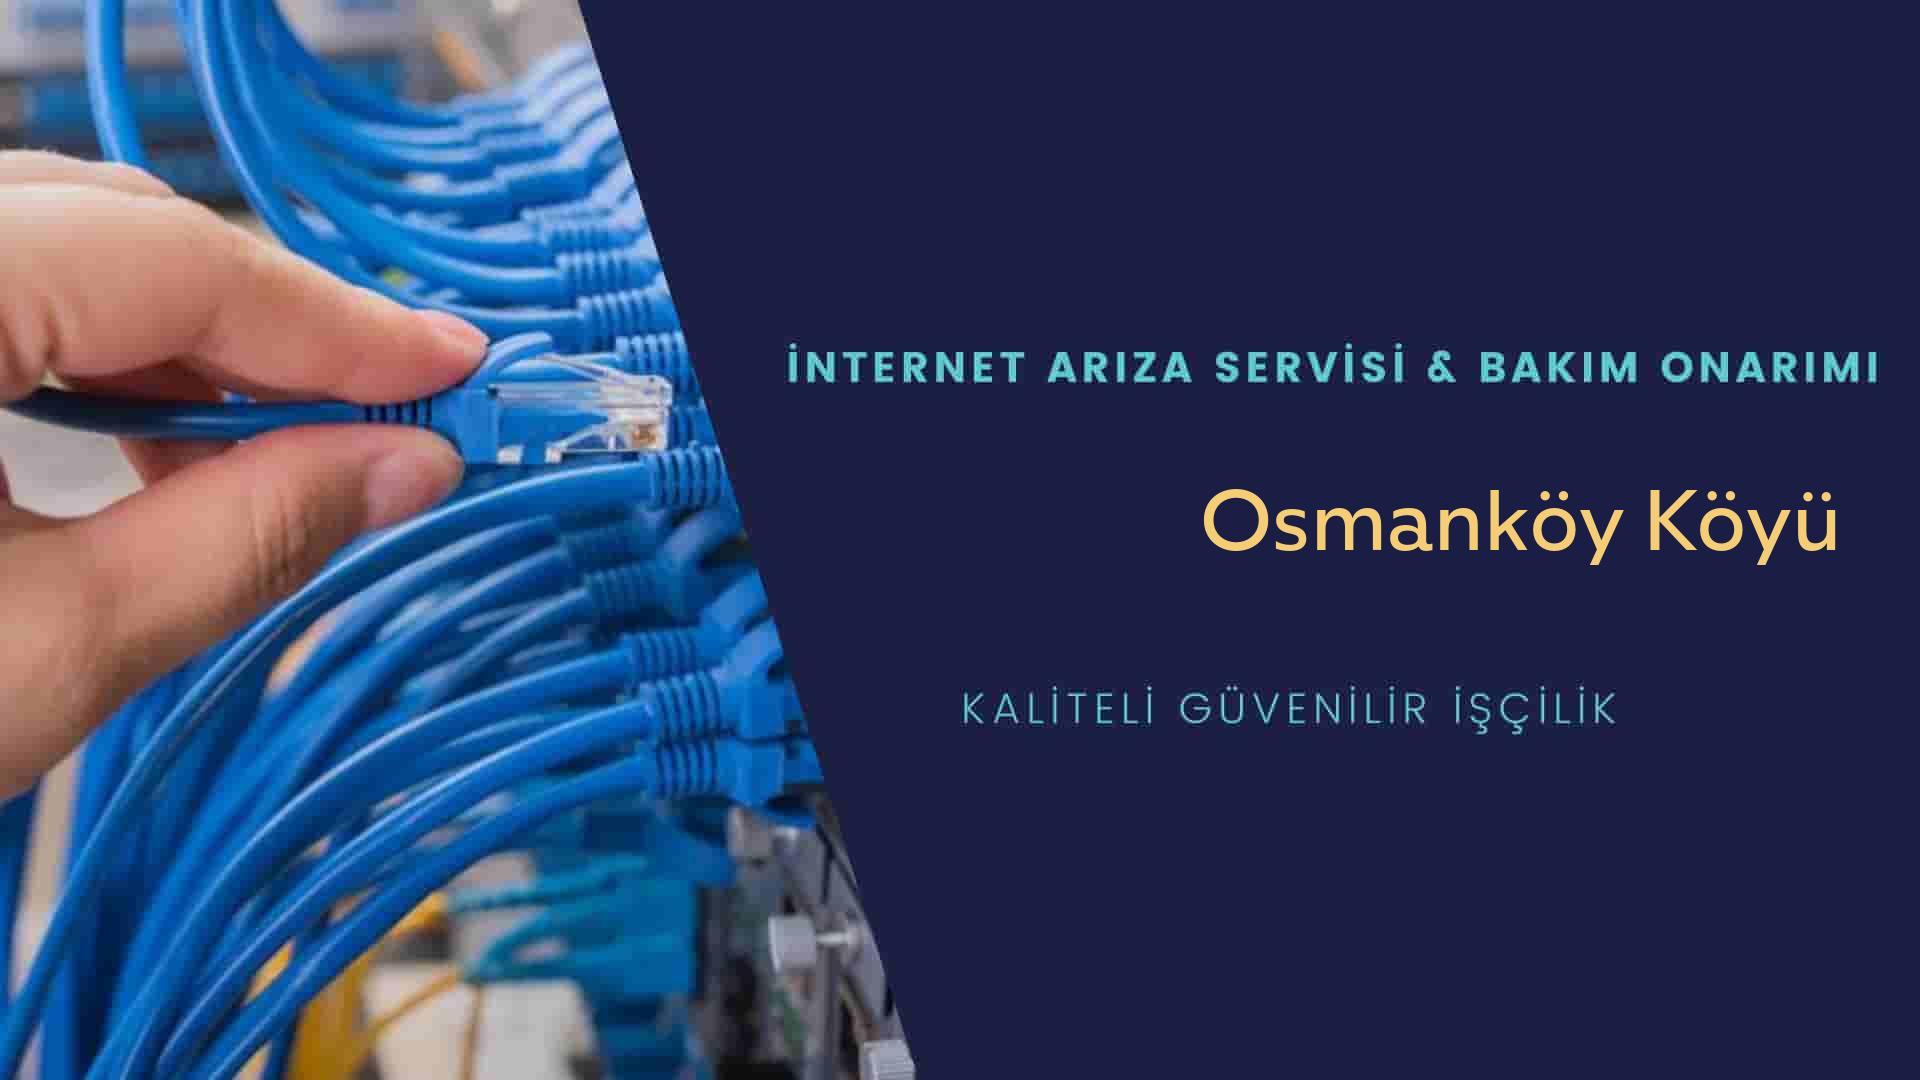 Osmanköy Köyü internet kablosu çekimi yapan yerler veya elektrikçiler mi? arıyorsunuz doğru yerdesiniz o zaman sizlere 7/24 yardımcı olacak profesyonel ustalarımız bir telefon kadar yakındır size.